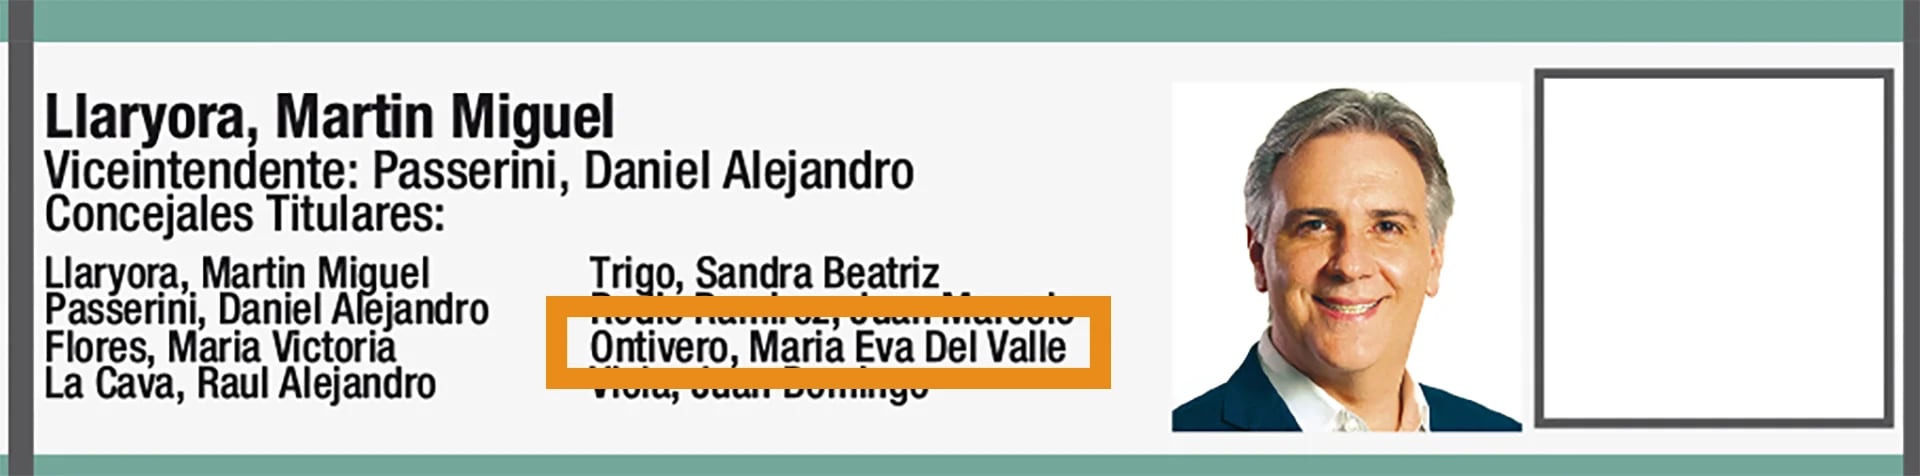 Eva Ontivero figuraba como candidata a concejal del espacio de Llaryora en la BUS